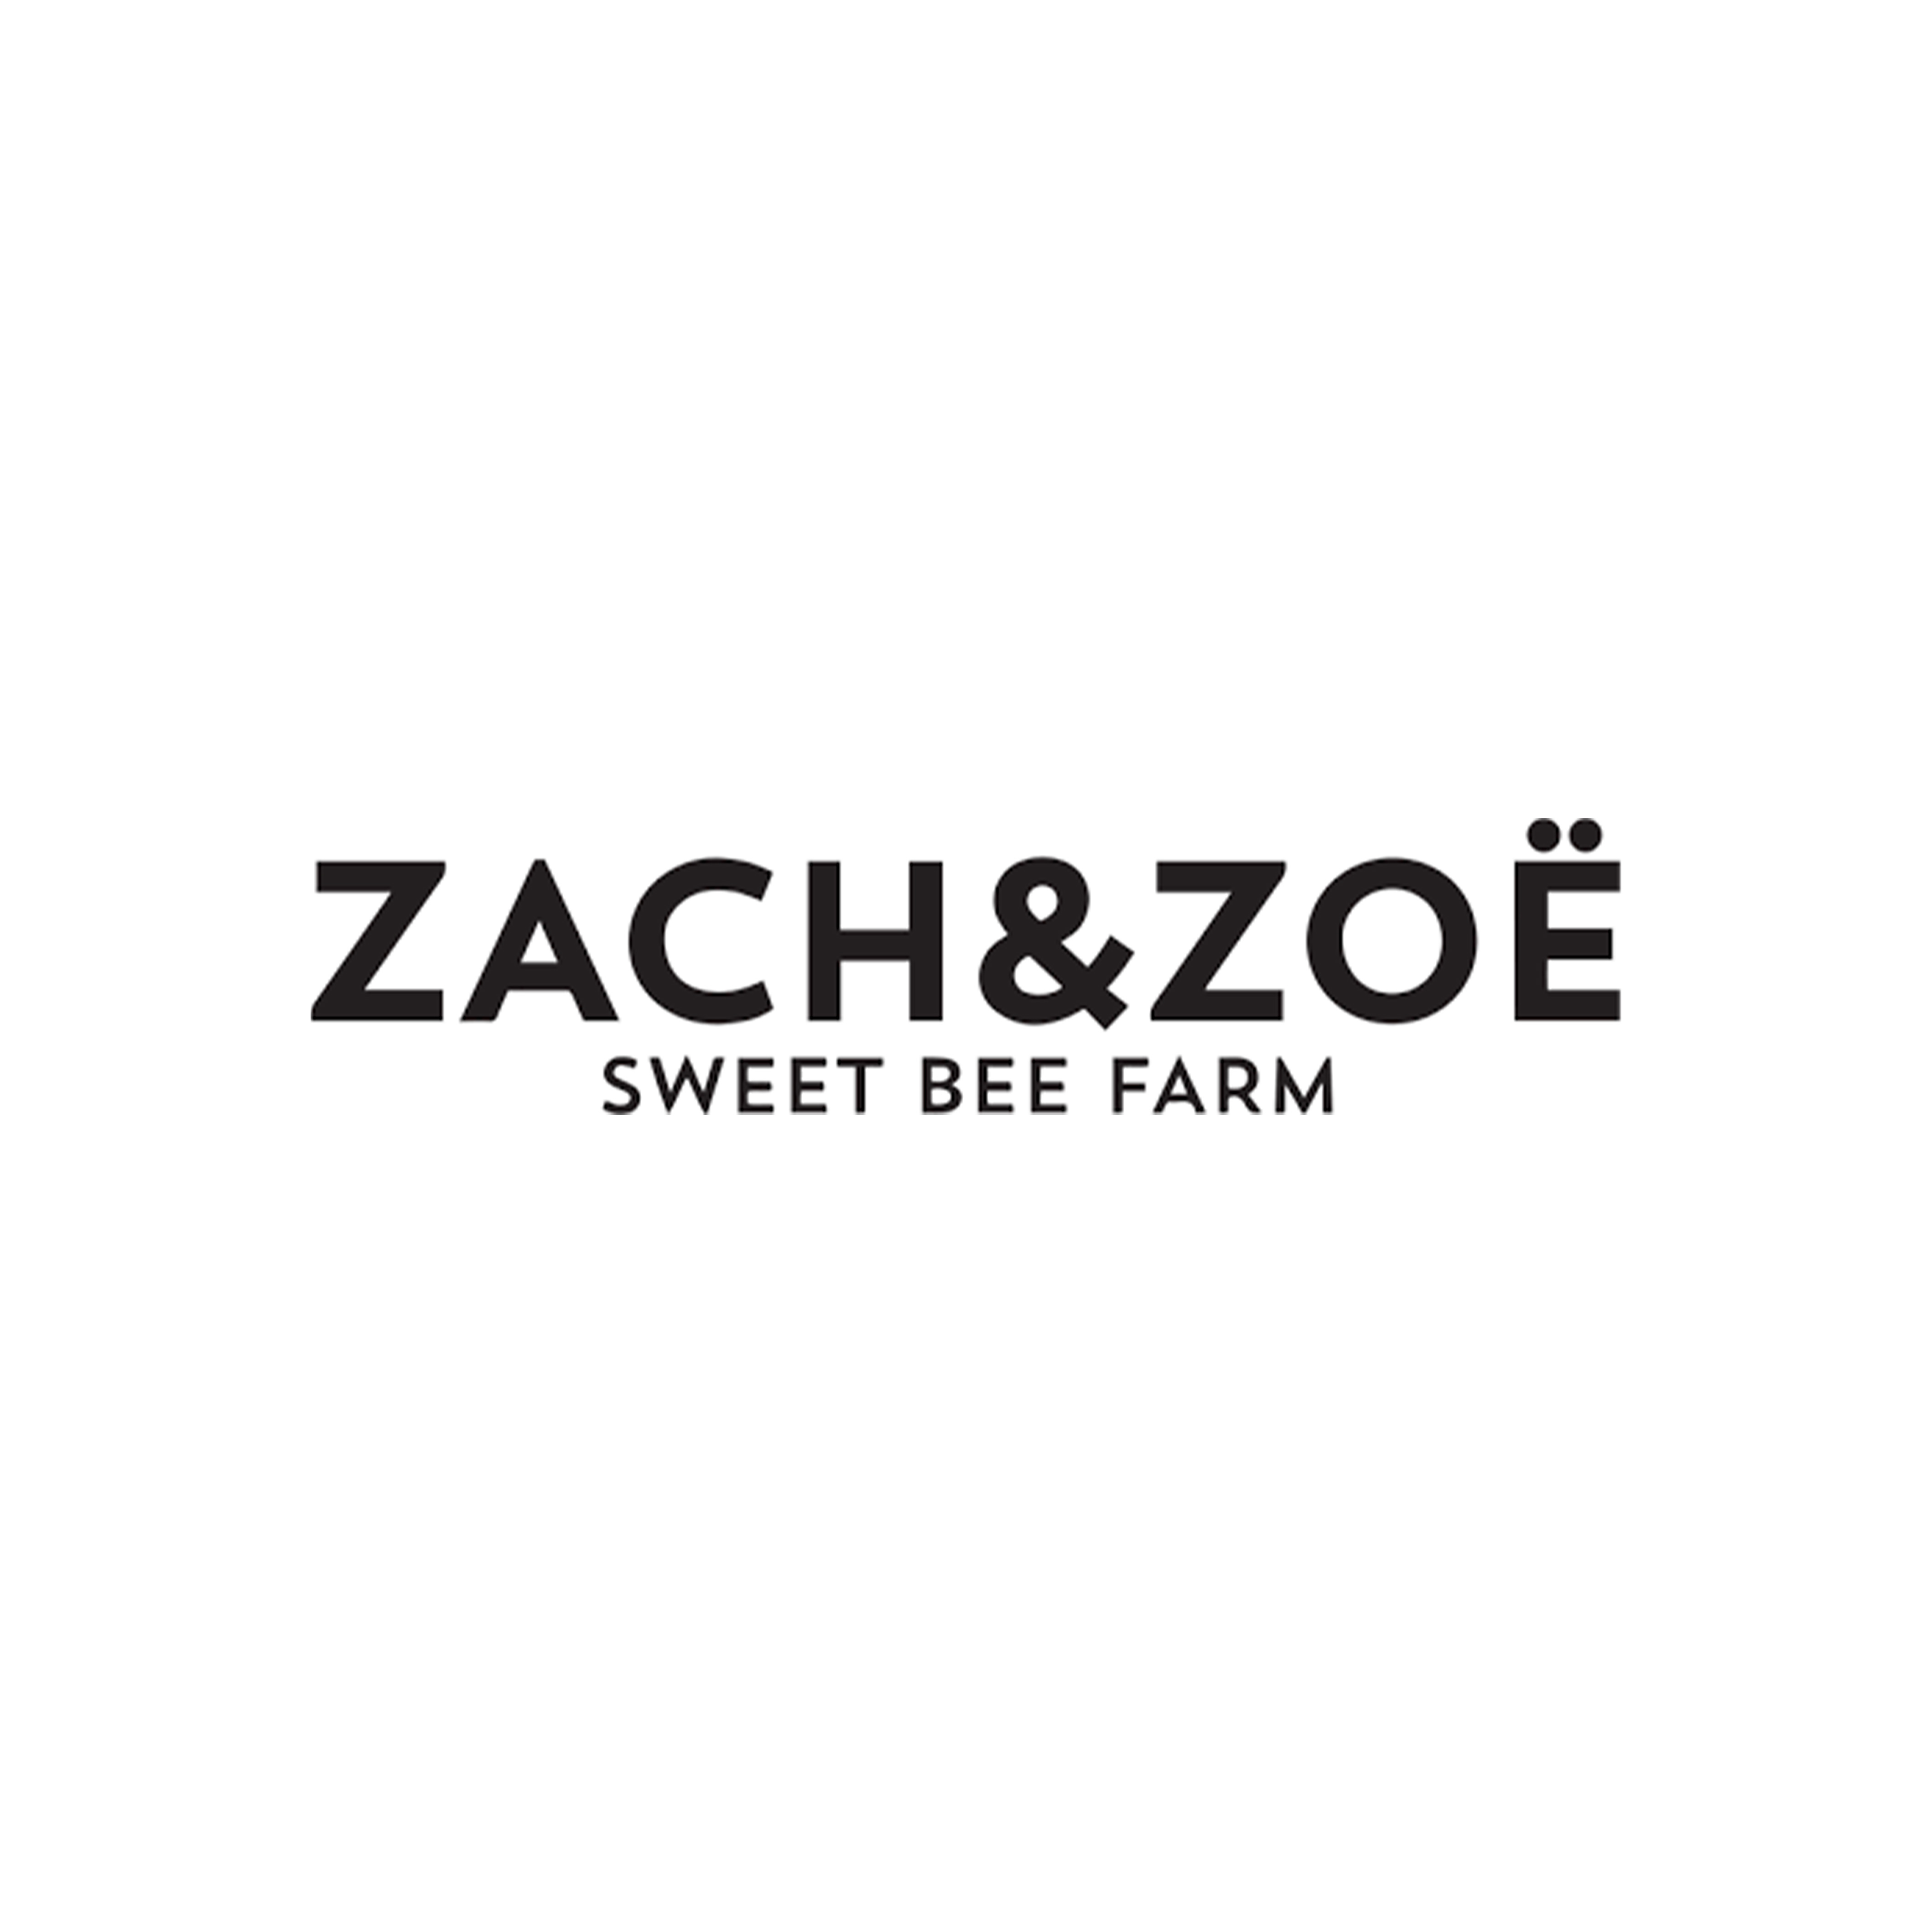 Zachandzoe logo